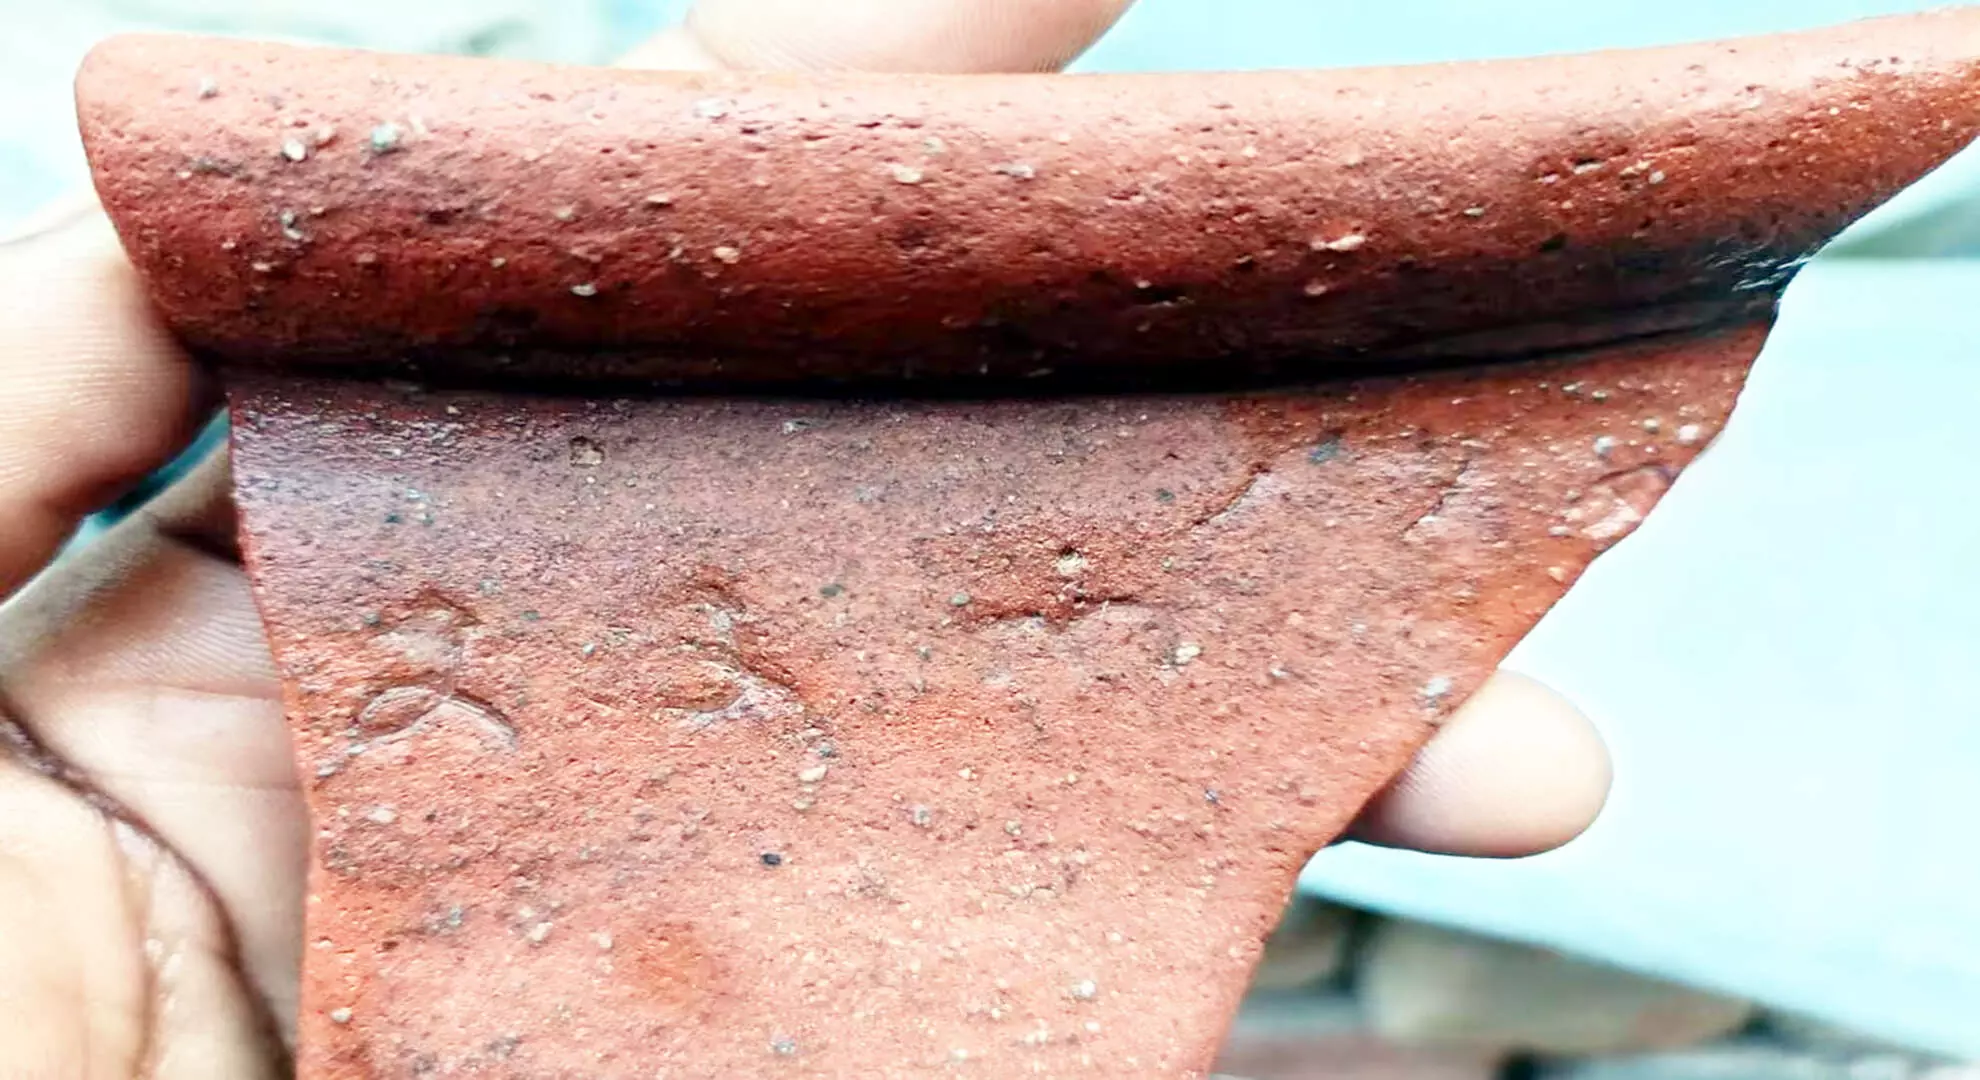 विल्लुपुरम में थेनपेन्नई नदी तल से चोल-युग के बर्तन का टुकड़ा मिला